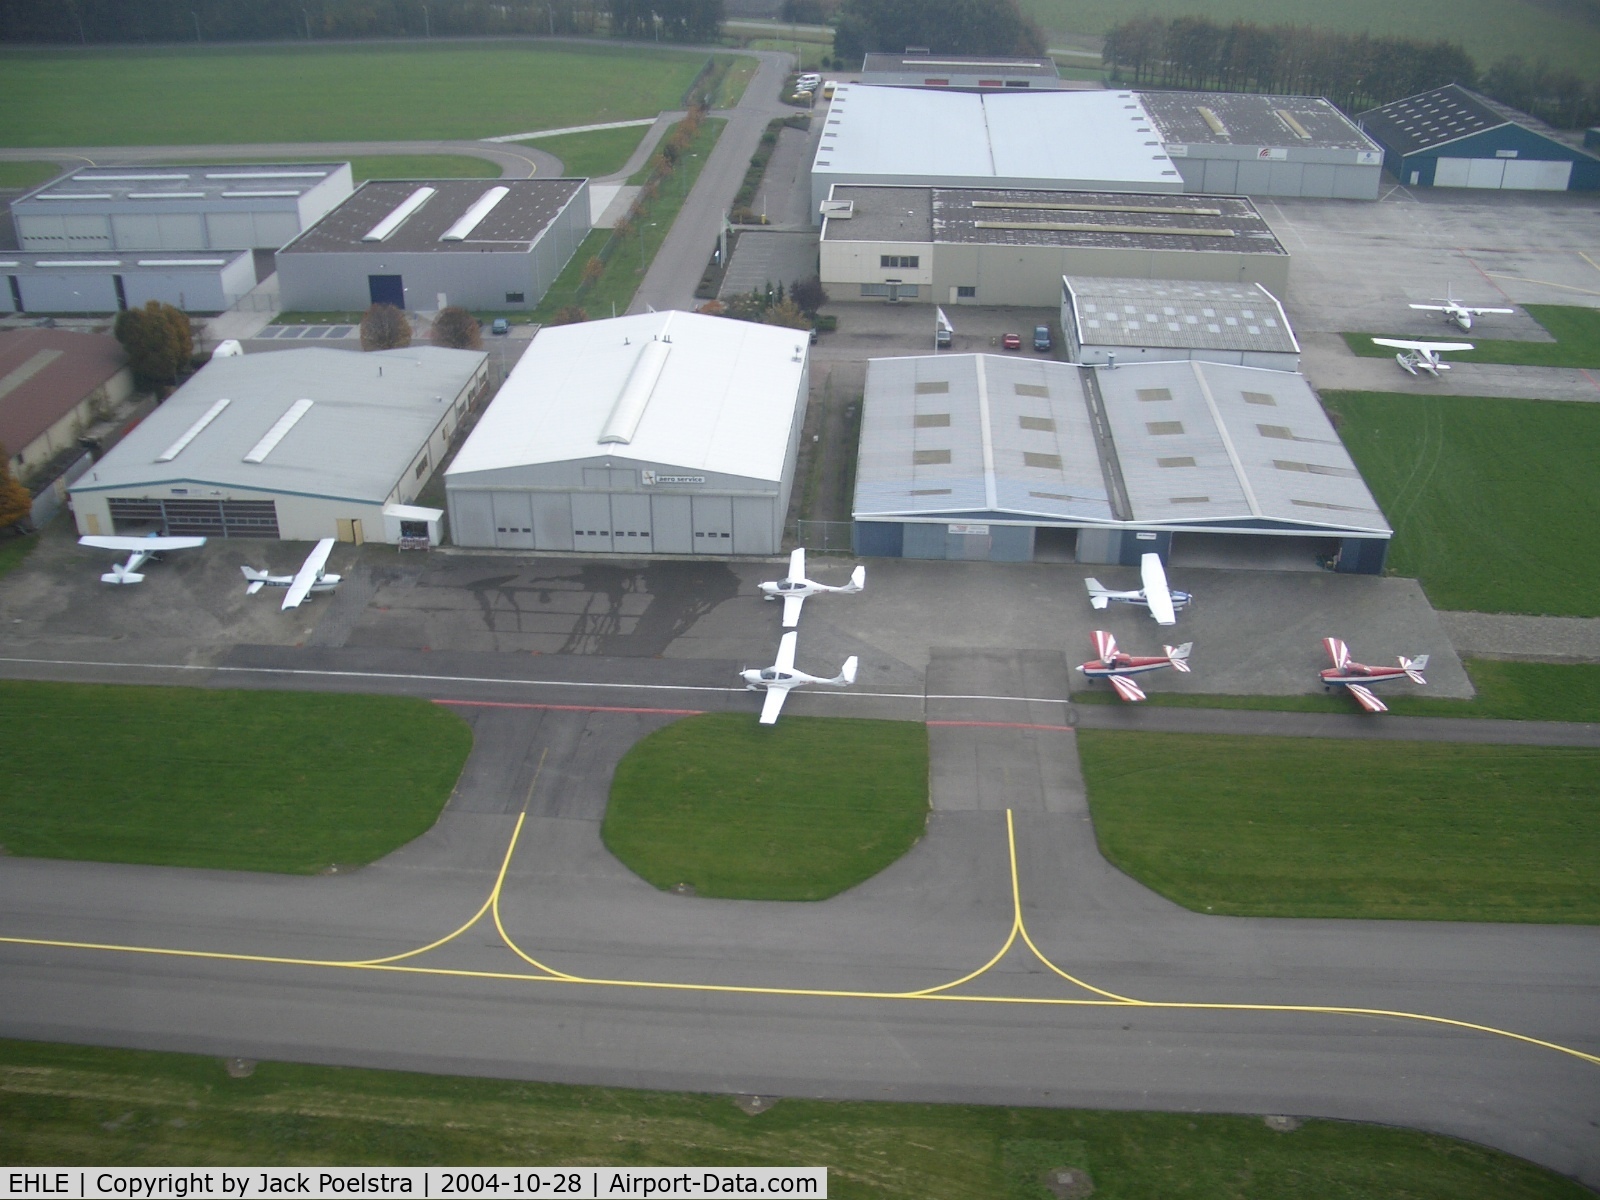 Lelystad Airport, Lelystad Netherlands (EHLE) - Hangars of Lelystad airport